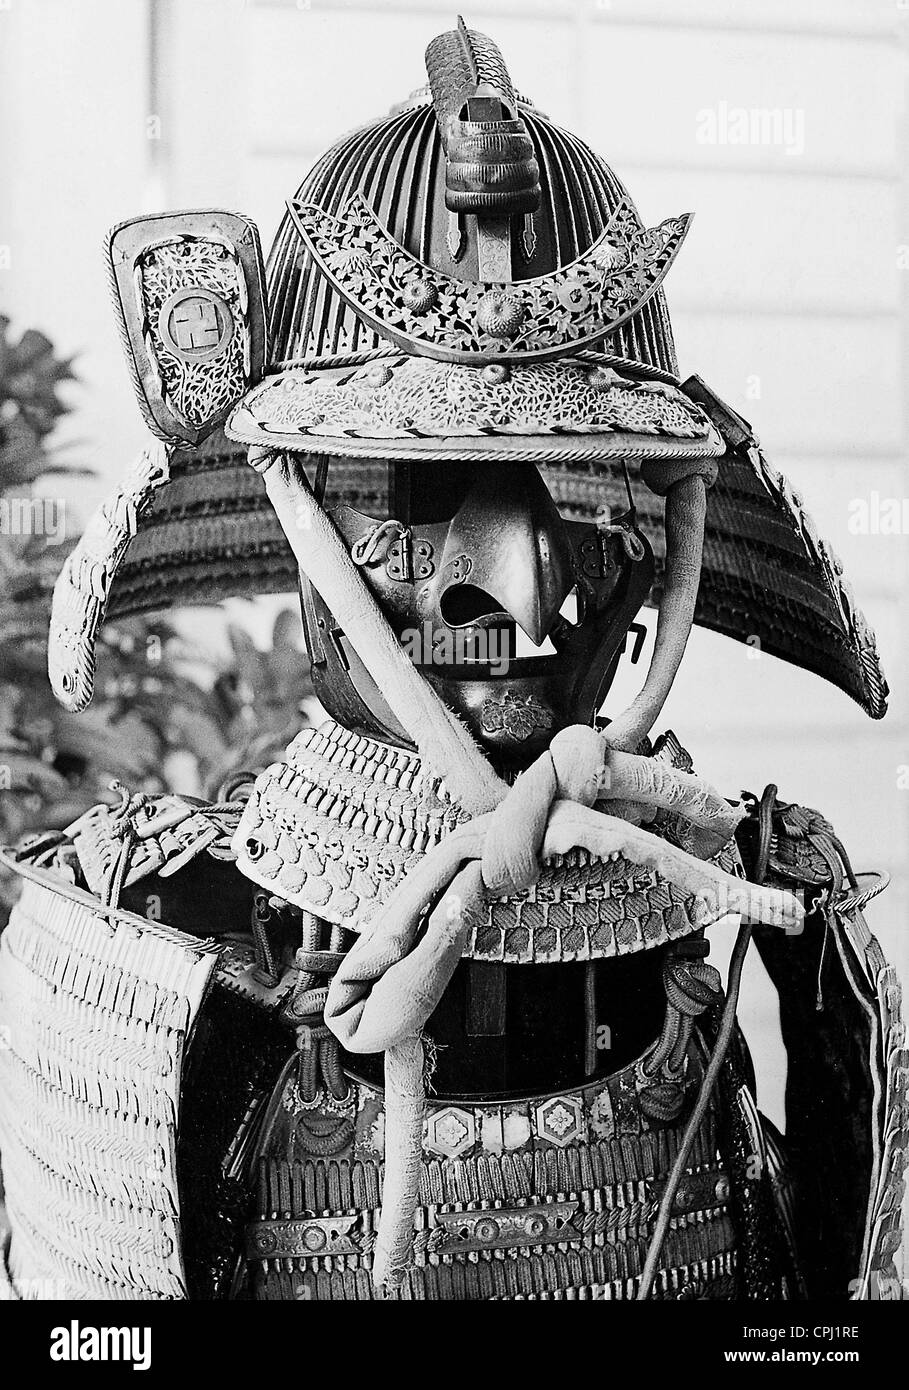 Armor of a Samurai, 1940 Stock Photo